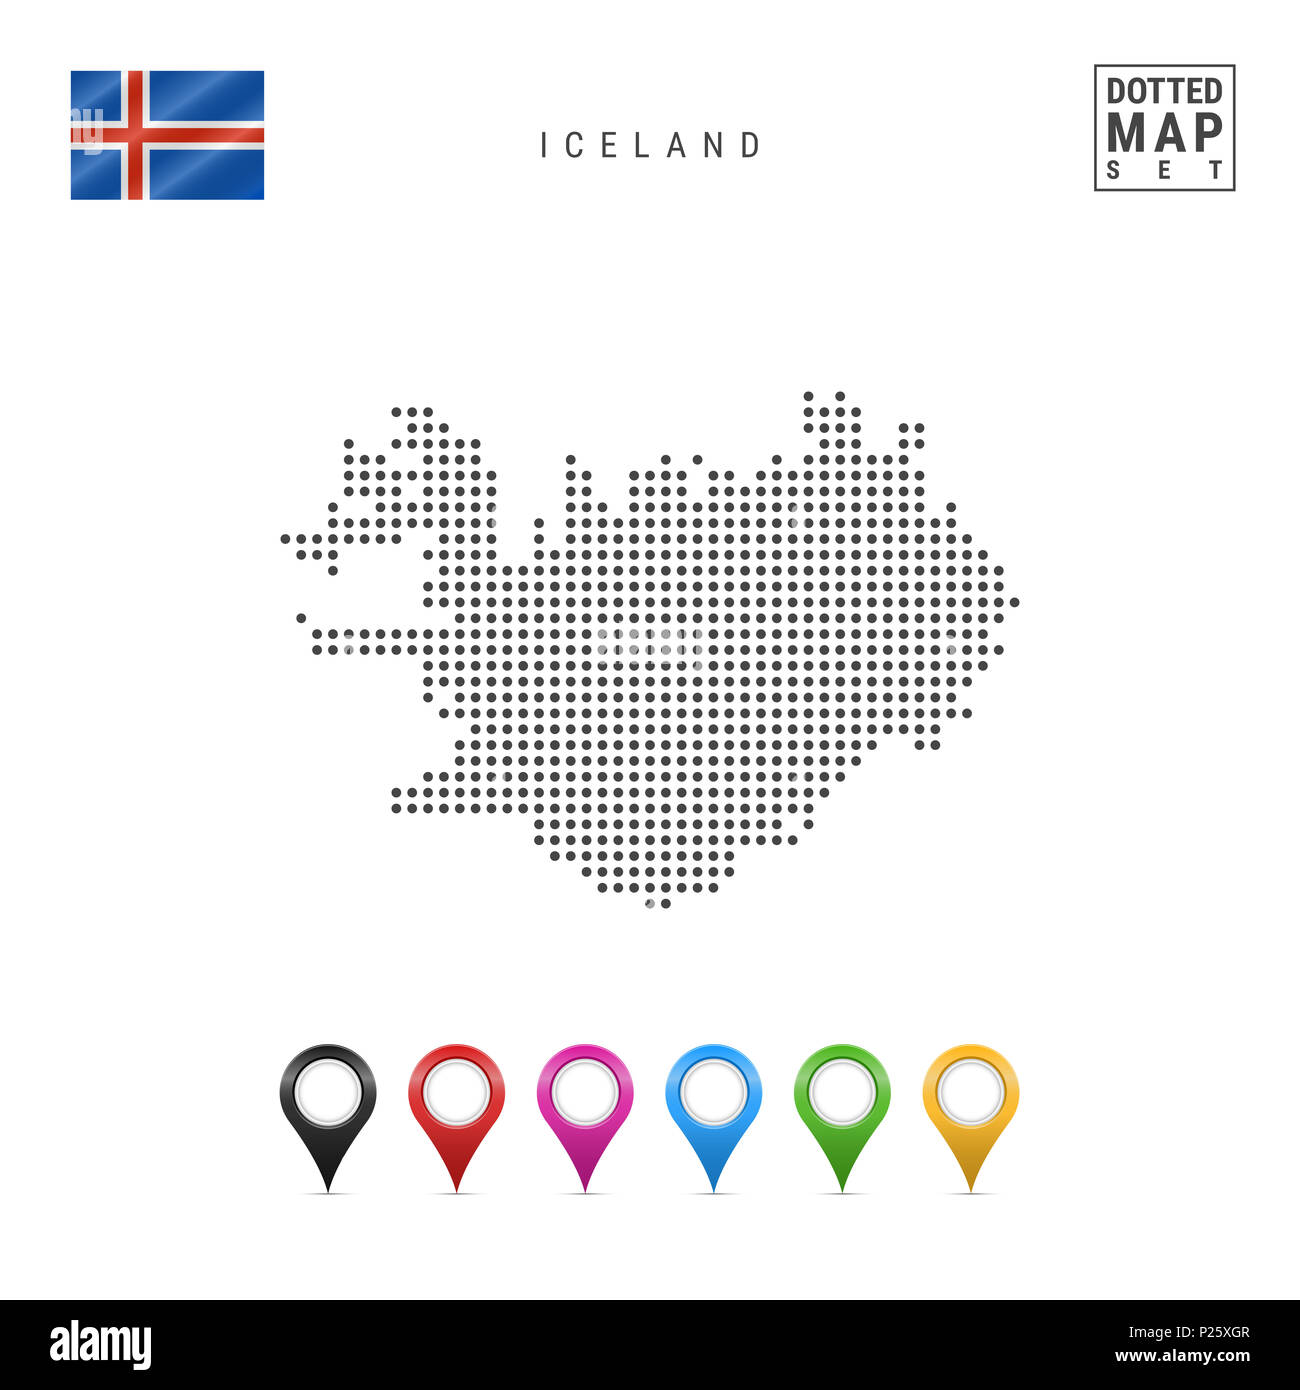 Gepunktete Karte von Island. Einfache Silhouette Island. Die Nationalflagge von Island. Eingestellt von bunten Karte Markierungen. Abbildung isoliert auf weißem Bac Stockfoto